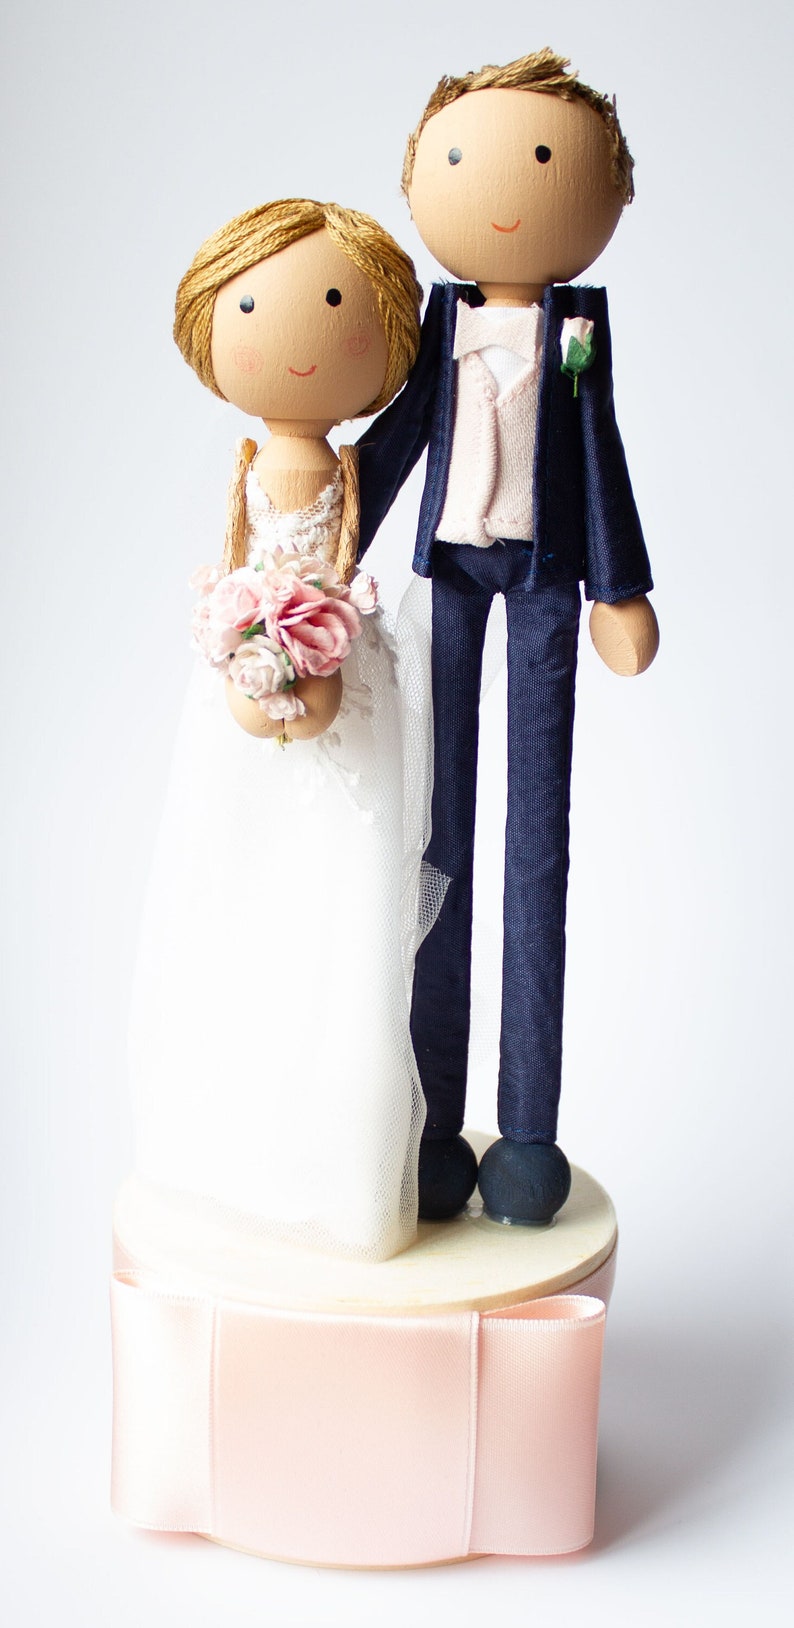 Ein Hochzeitspaar für die Hochzeitstorte, welche dem Brautpaar angepasst sind. Die Tortenfiguren haben den Look der Braut und des Bräutigams.